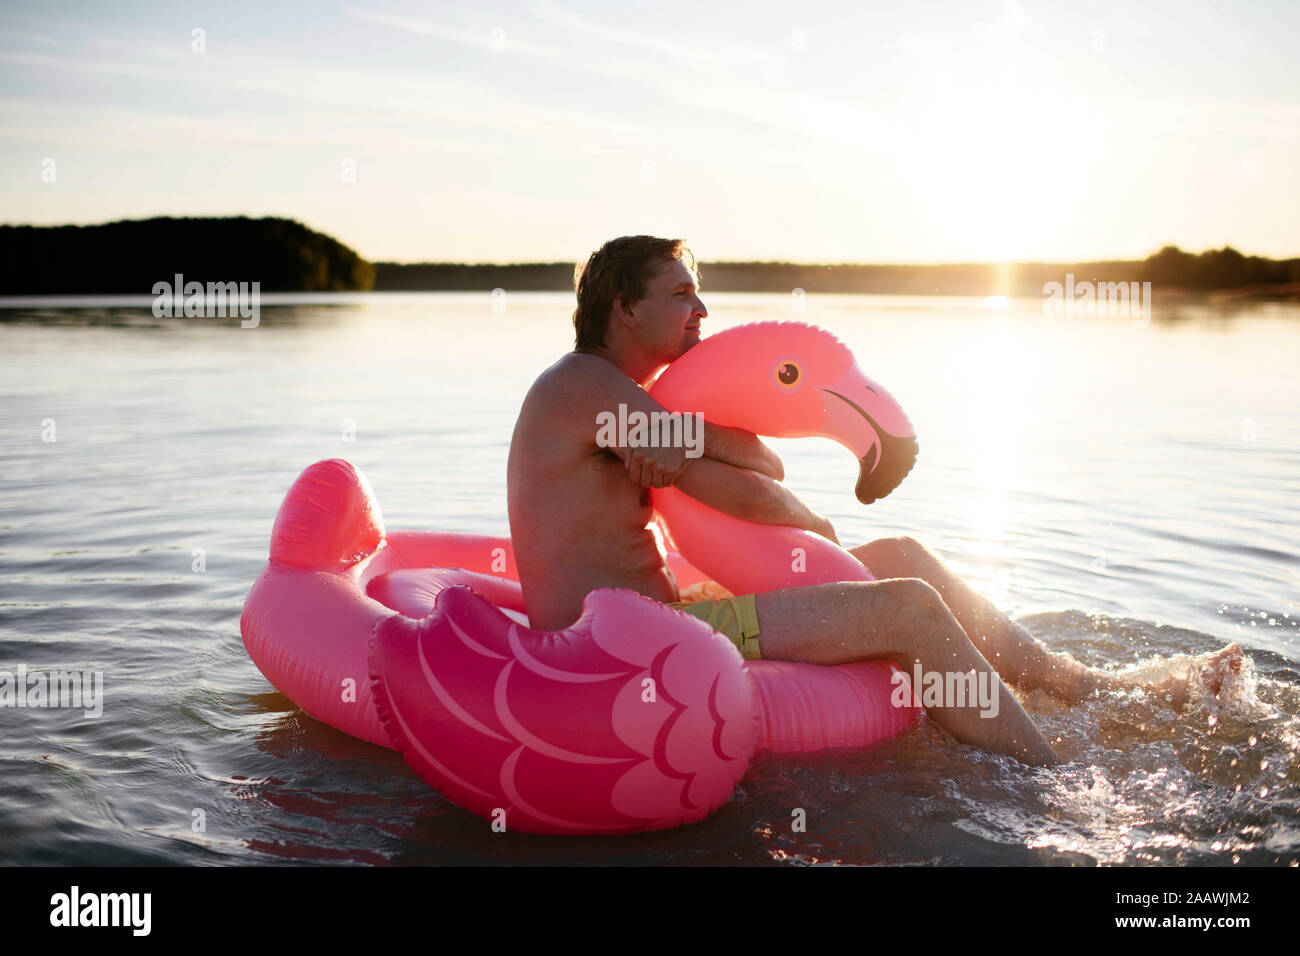 Jeune homme à la piscine du Flamingo flottent sur un lac Banque D'Images